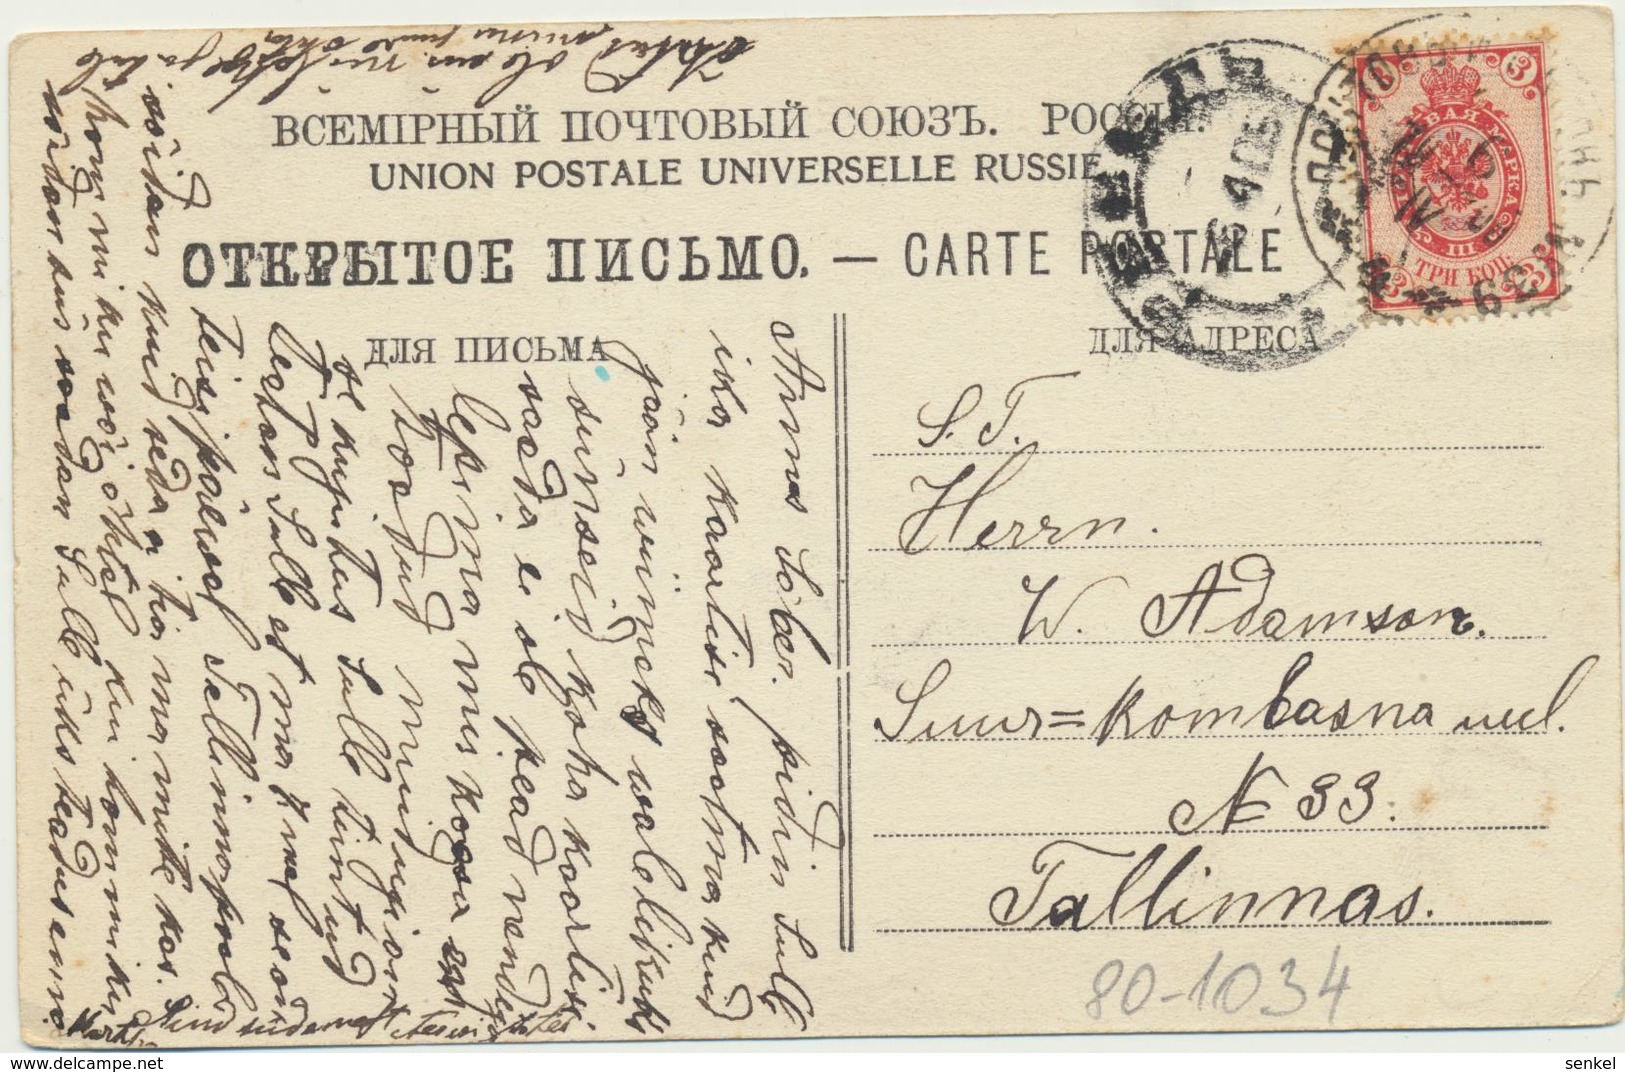 80-1034 Estonia Tallinn Reval Postal History Russia - Estonia